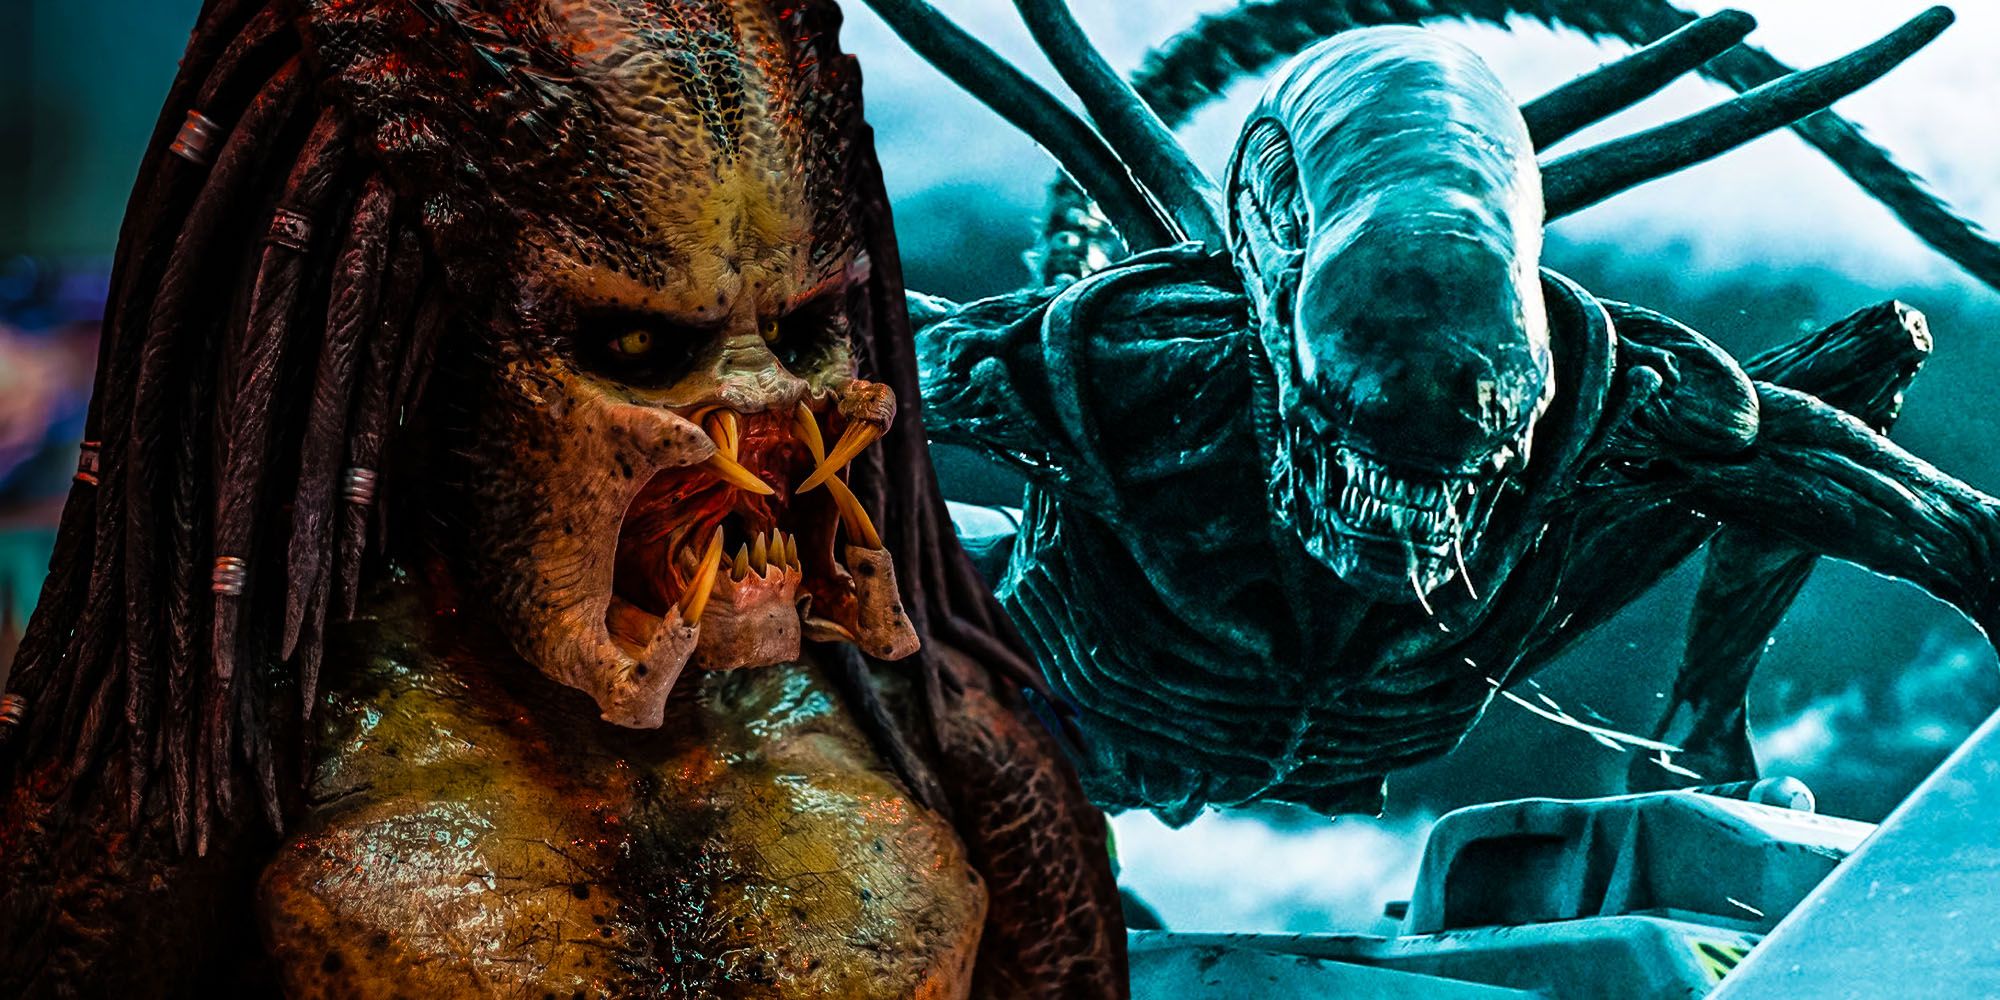 Alien Vs Predator: ¿Qué serie de ciencia ficción y terror es más exitosa?